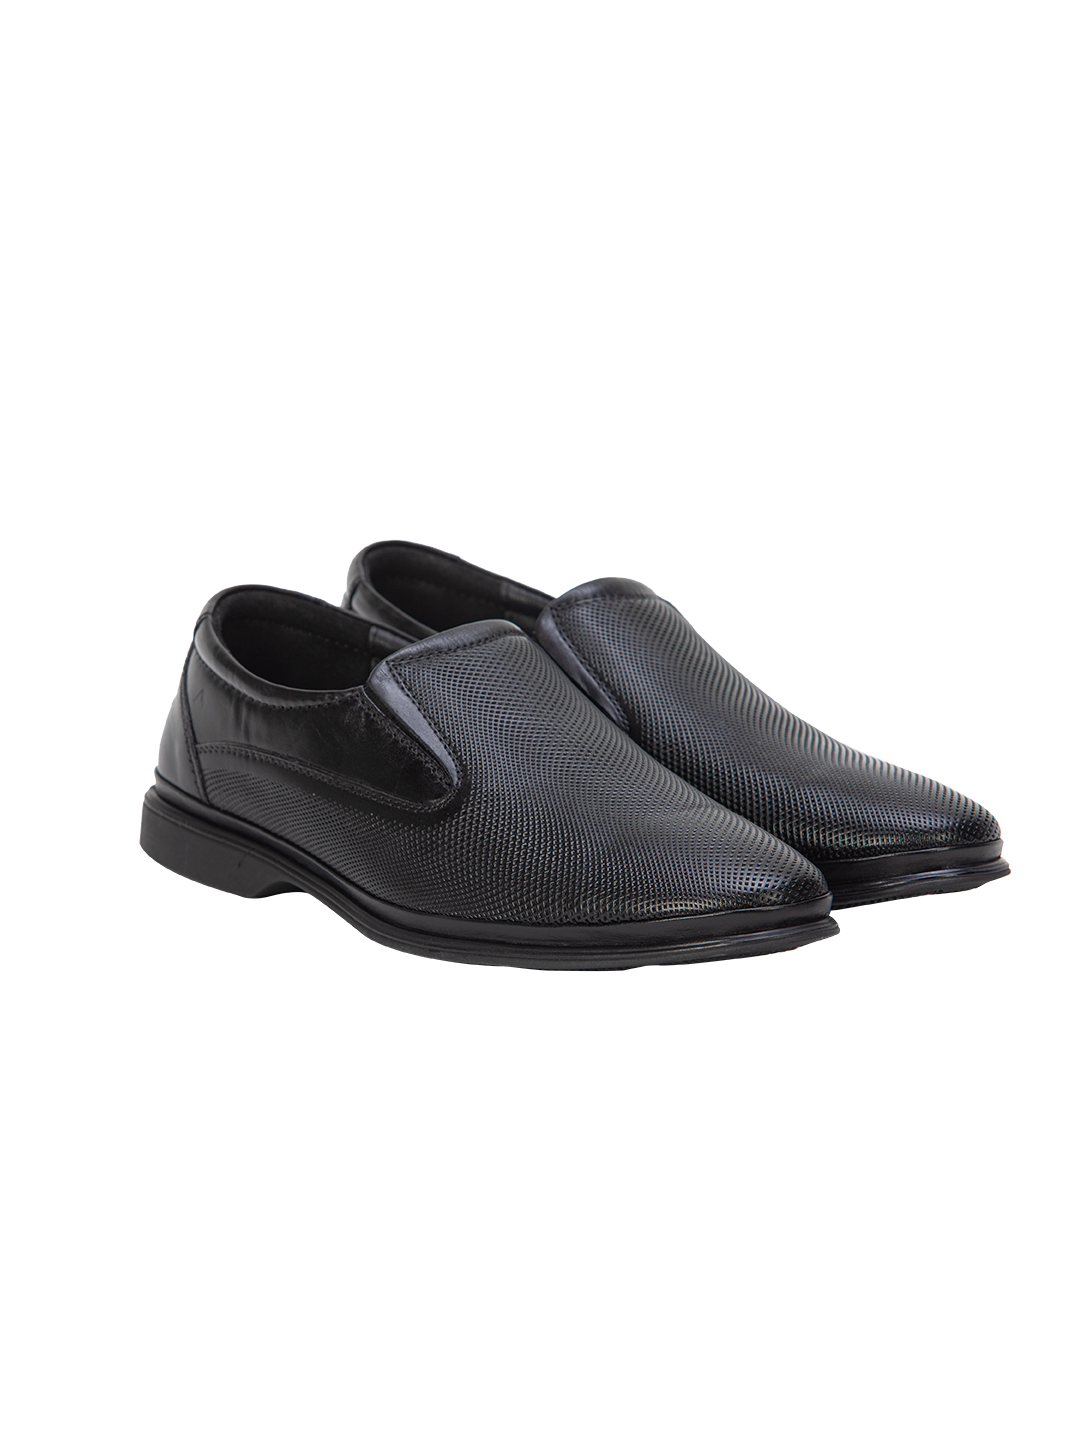 Buy Von Wellx Germany Comfort Mondaine Casual Black Shoes Online in Varanasi